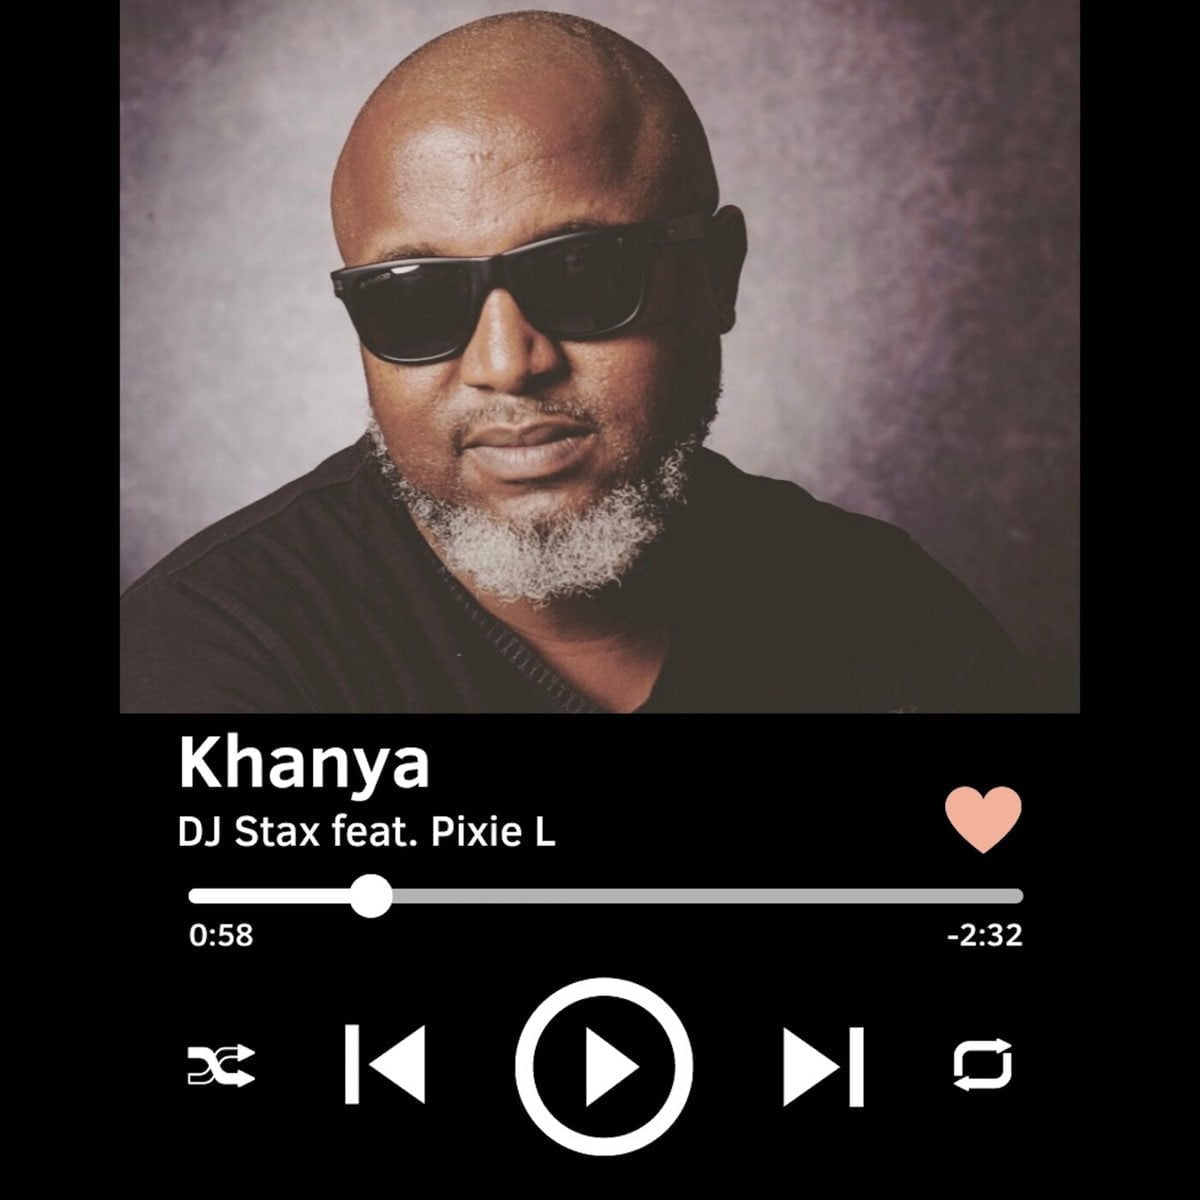 DJ Stax - Khanya (feat. Pixie L) mp3 download free lyrics